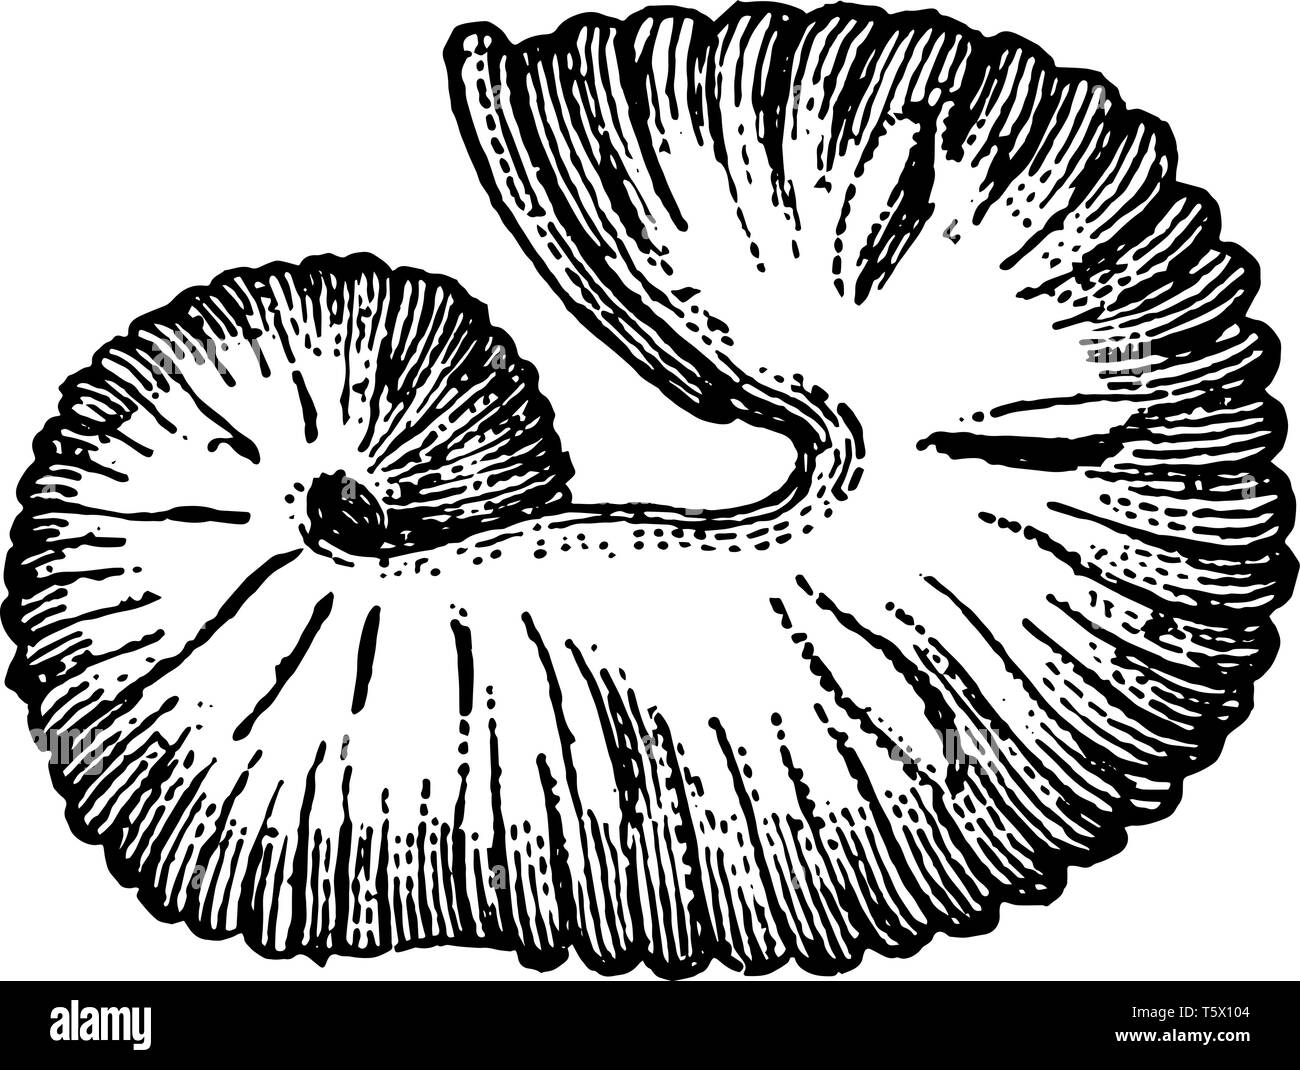 Estinte fossili di cefalopodi Scaphites equalis è una specie di estinzione dei cefalopodi che fiorì durante il Cretacico vintage disegno della linea o engr Illustrazione Vettoriale